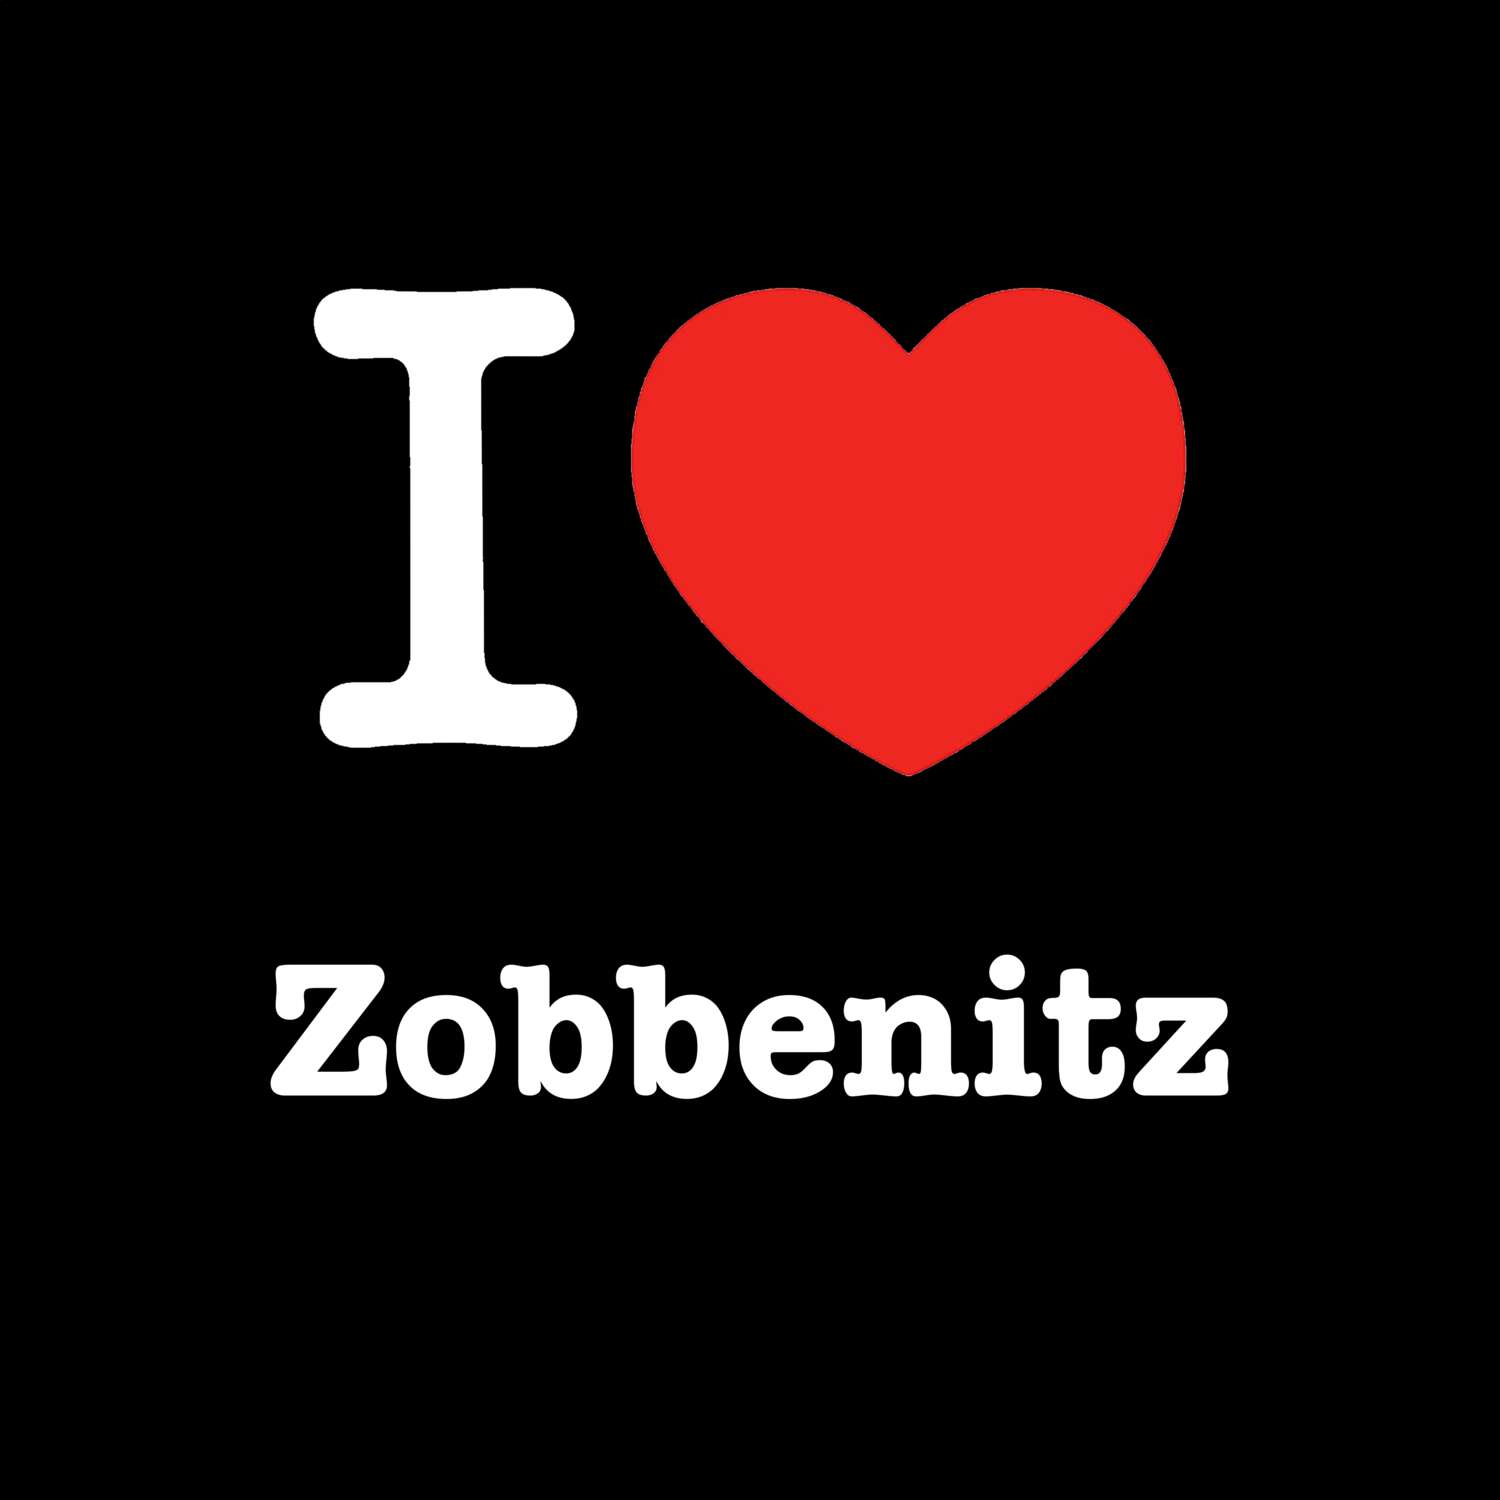 Zobbenitz T-Shirt »I love«